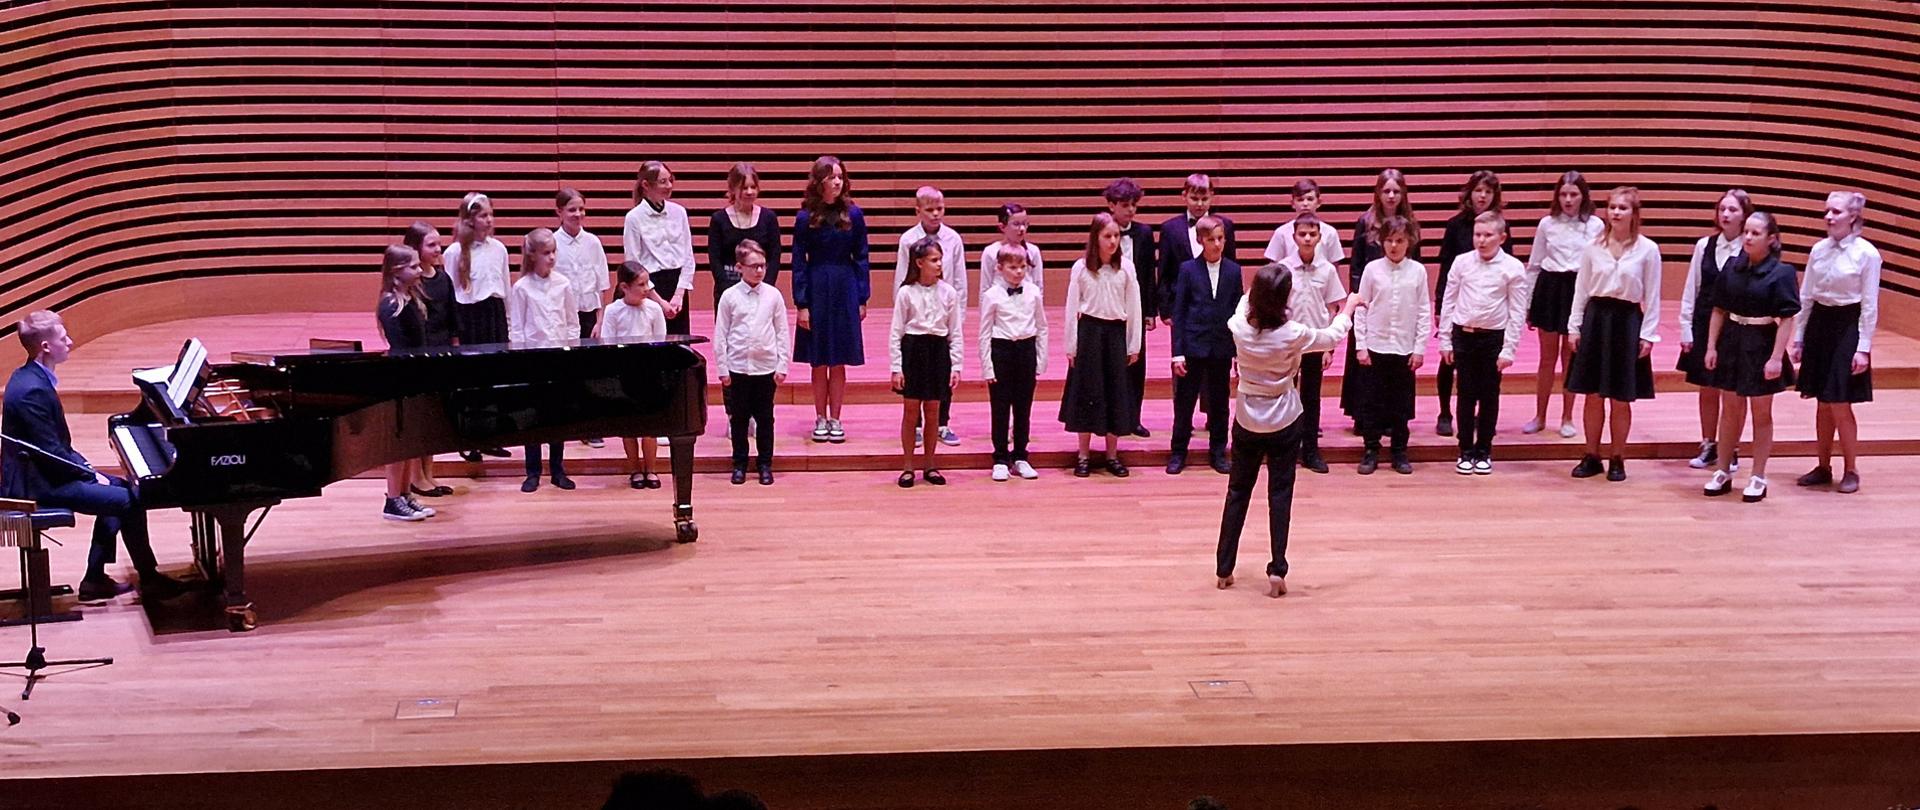 Dzieci stoją w dwóch rzędach i śpiewają, z przodu na środku dyryguje kobieta, po lewej stronie siedzi mężczyzna przy fortepianie.